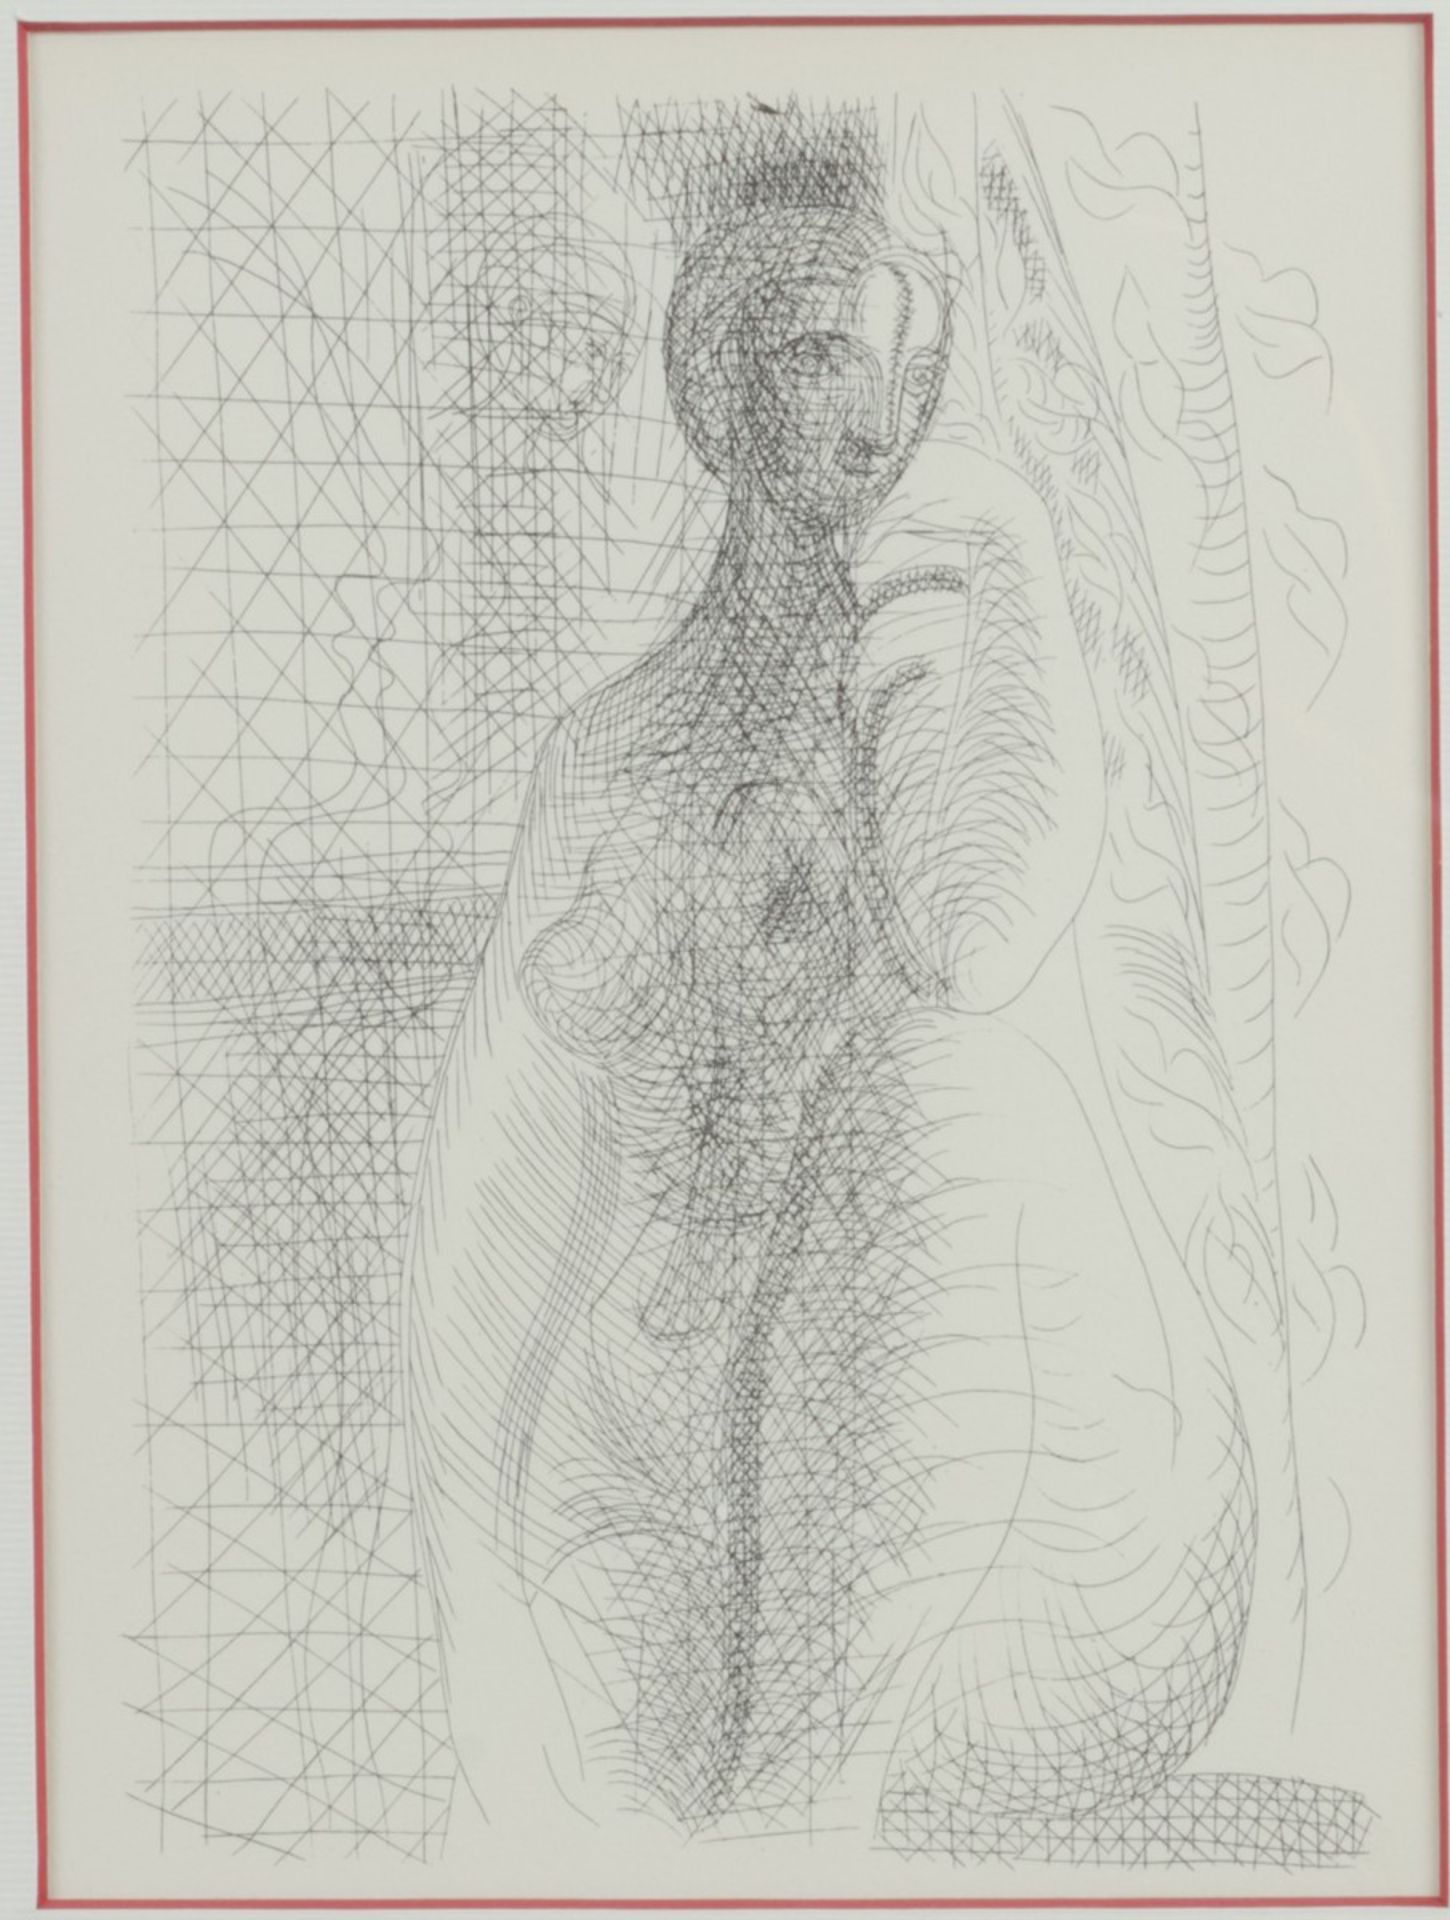 Picasso, Pablo (1881-1973) "Seated Nude", naar ets uit 1931, herkomst: 'Suite Vollard'1956, druk: Ve